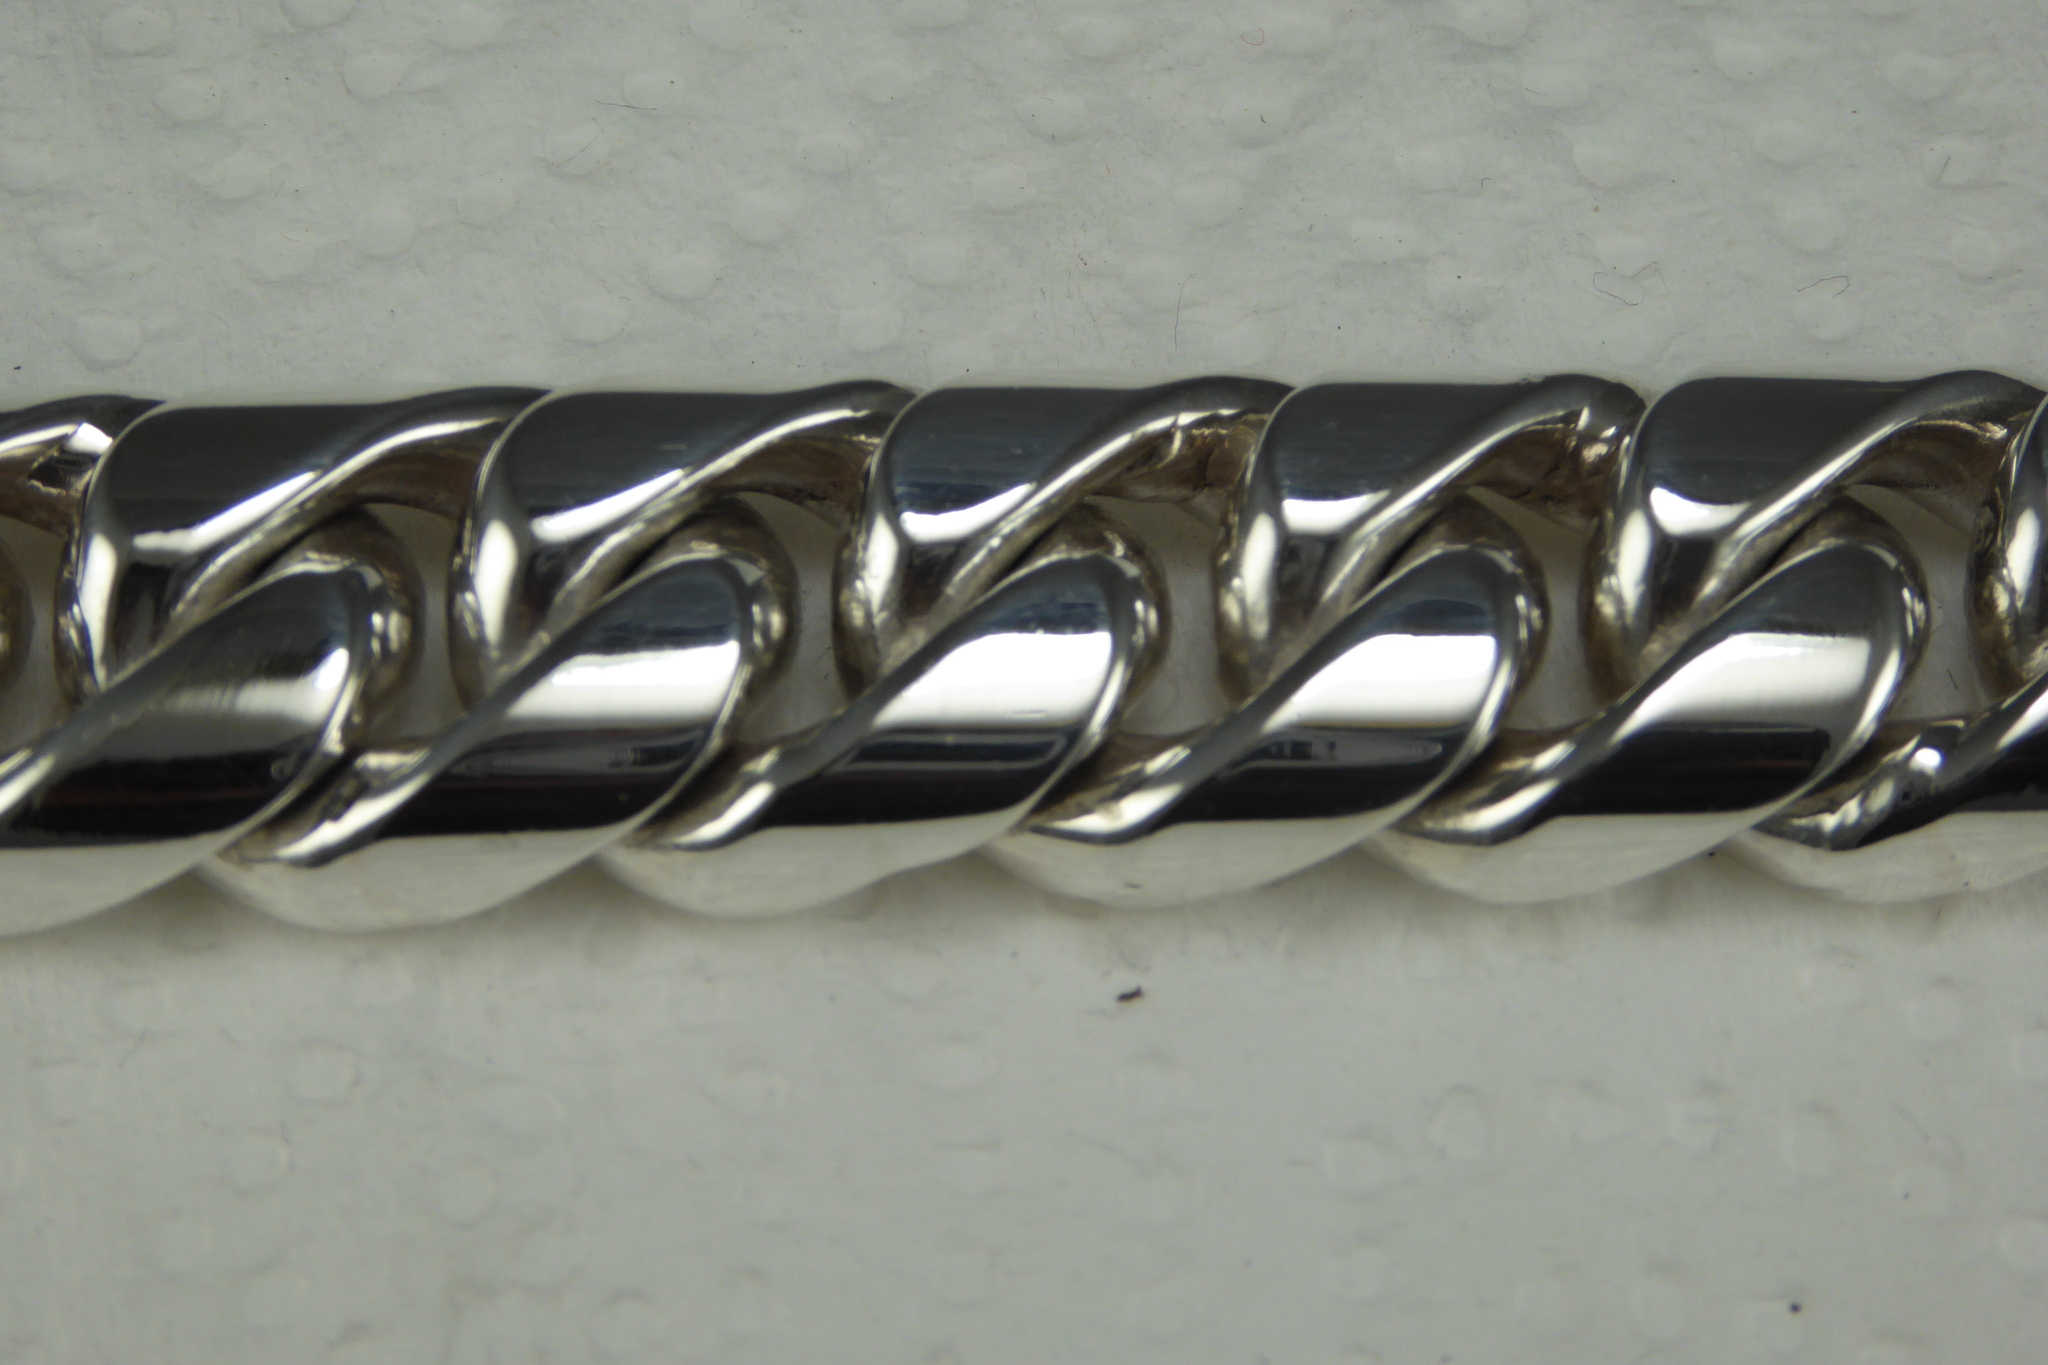 Rundad Pansarlänk 15 mm. i 100% solid Sterling Silver.